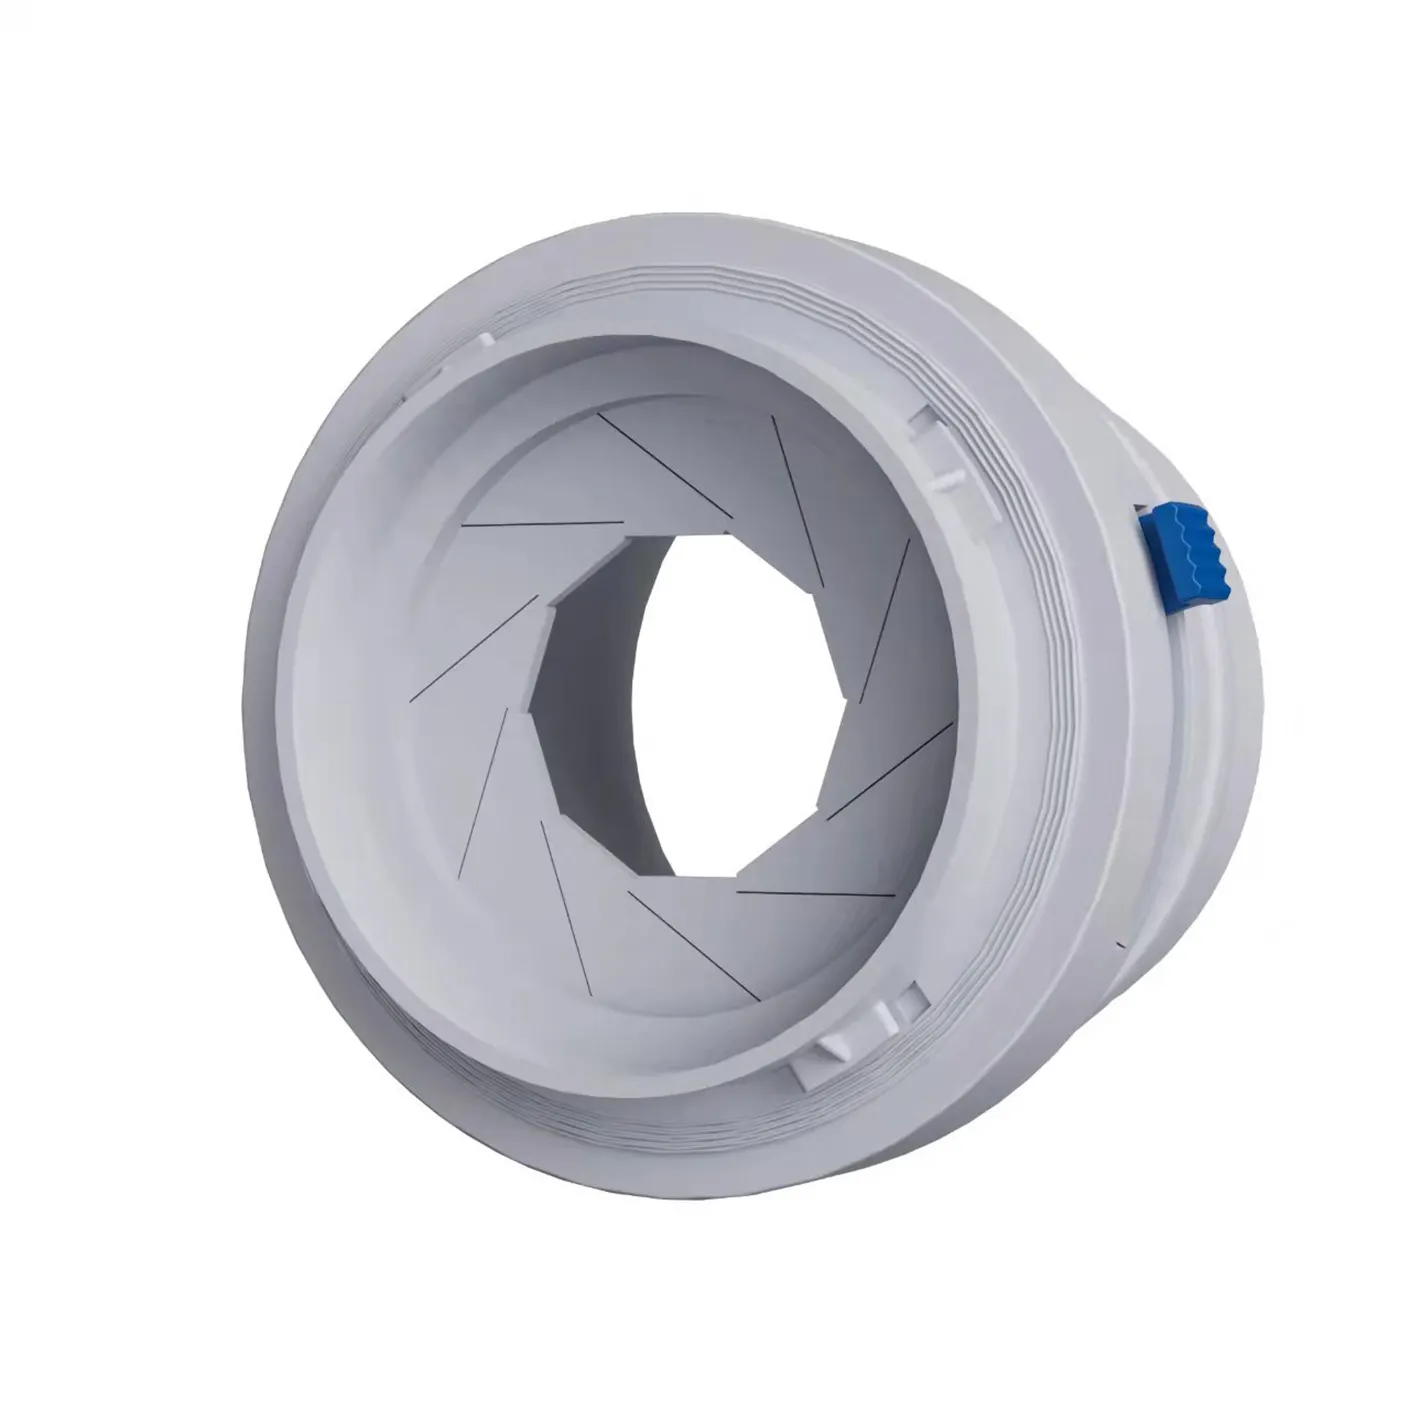 (Распределитель ABS) ERV/HRV регулирующий демпфер для вентиляции D75mm PE круглый воздушный клапан для труб